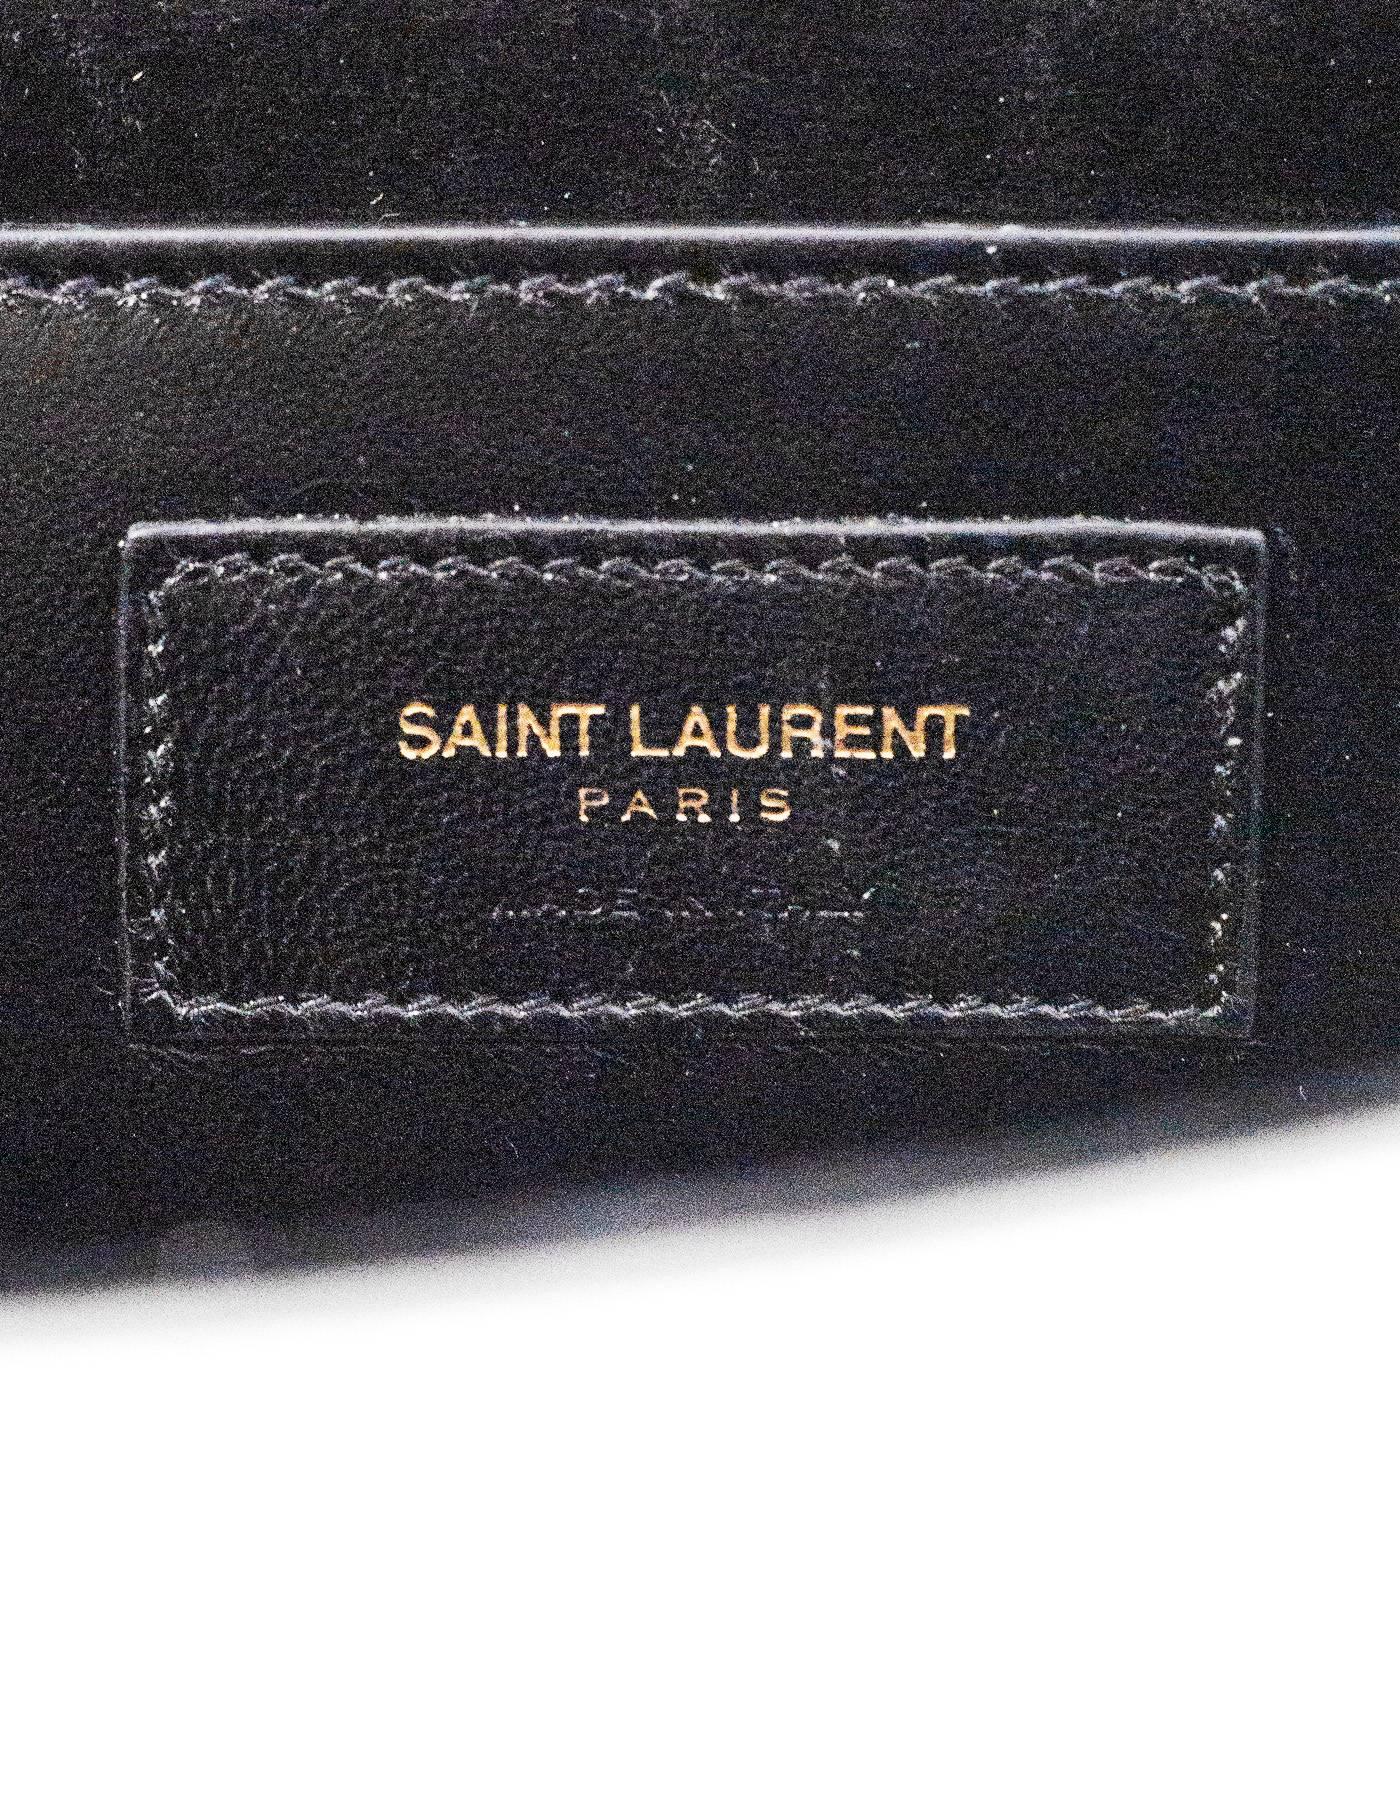 Saint Laurent Silver Leather Cassandre Monogram Clutch Bag 2